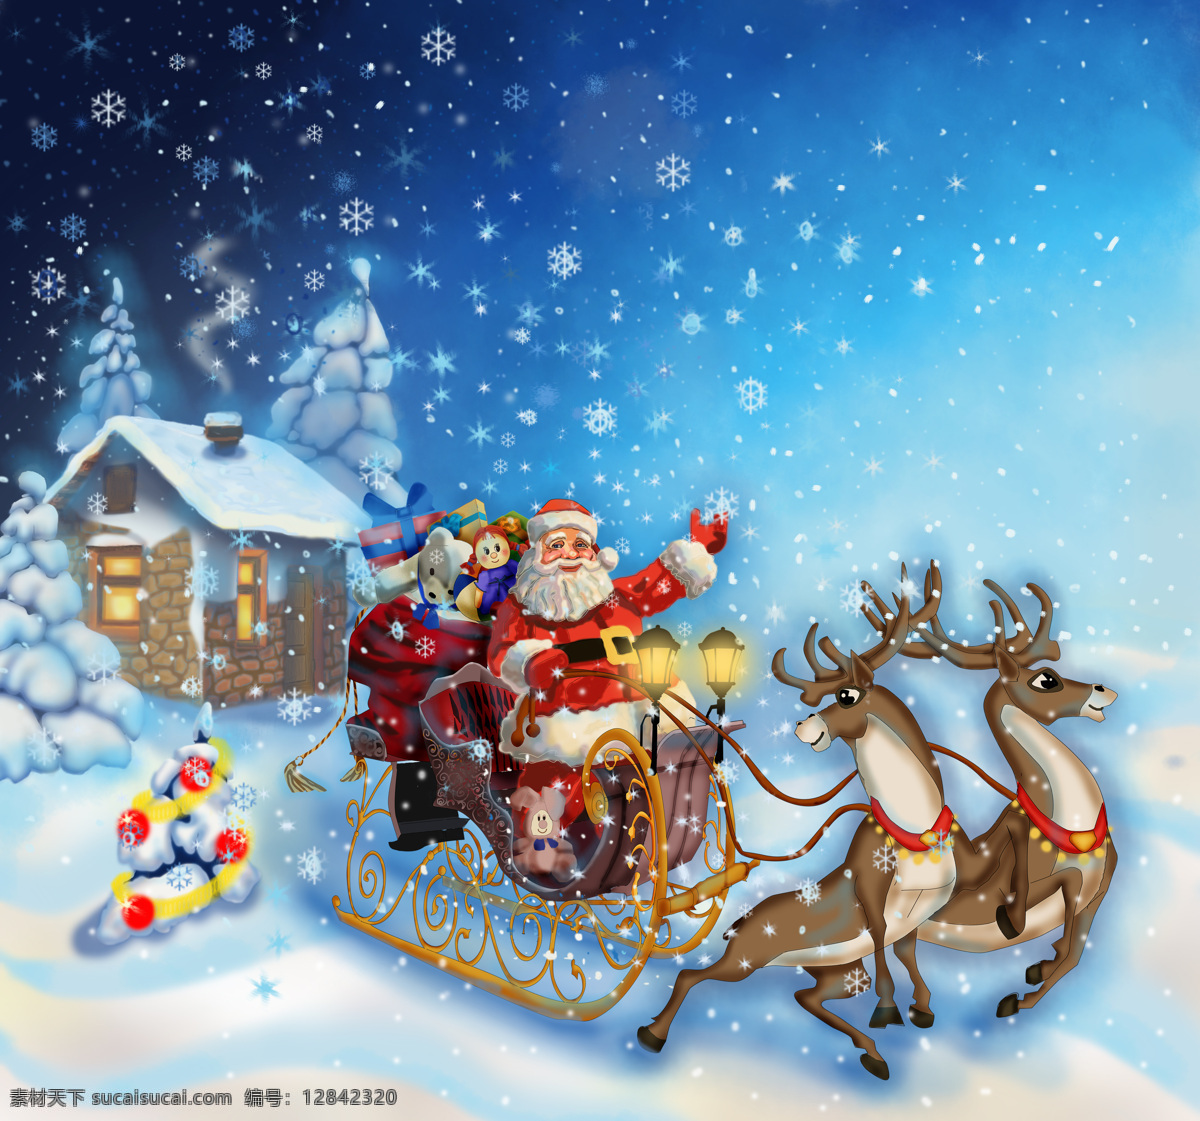 圣诞 圣诞老人 雪橇 礼物 下雪 卡通 麋鹿 雪鹿 雪车 礼盒 屋子 灯光 圣诞树 星星 雪花 圣诞背景 圣诞节 圣诞快乐 节日庆祝 文化艺术